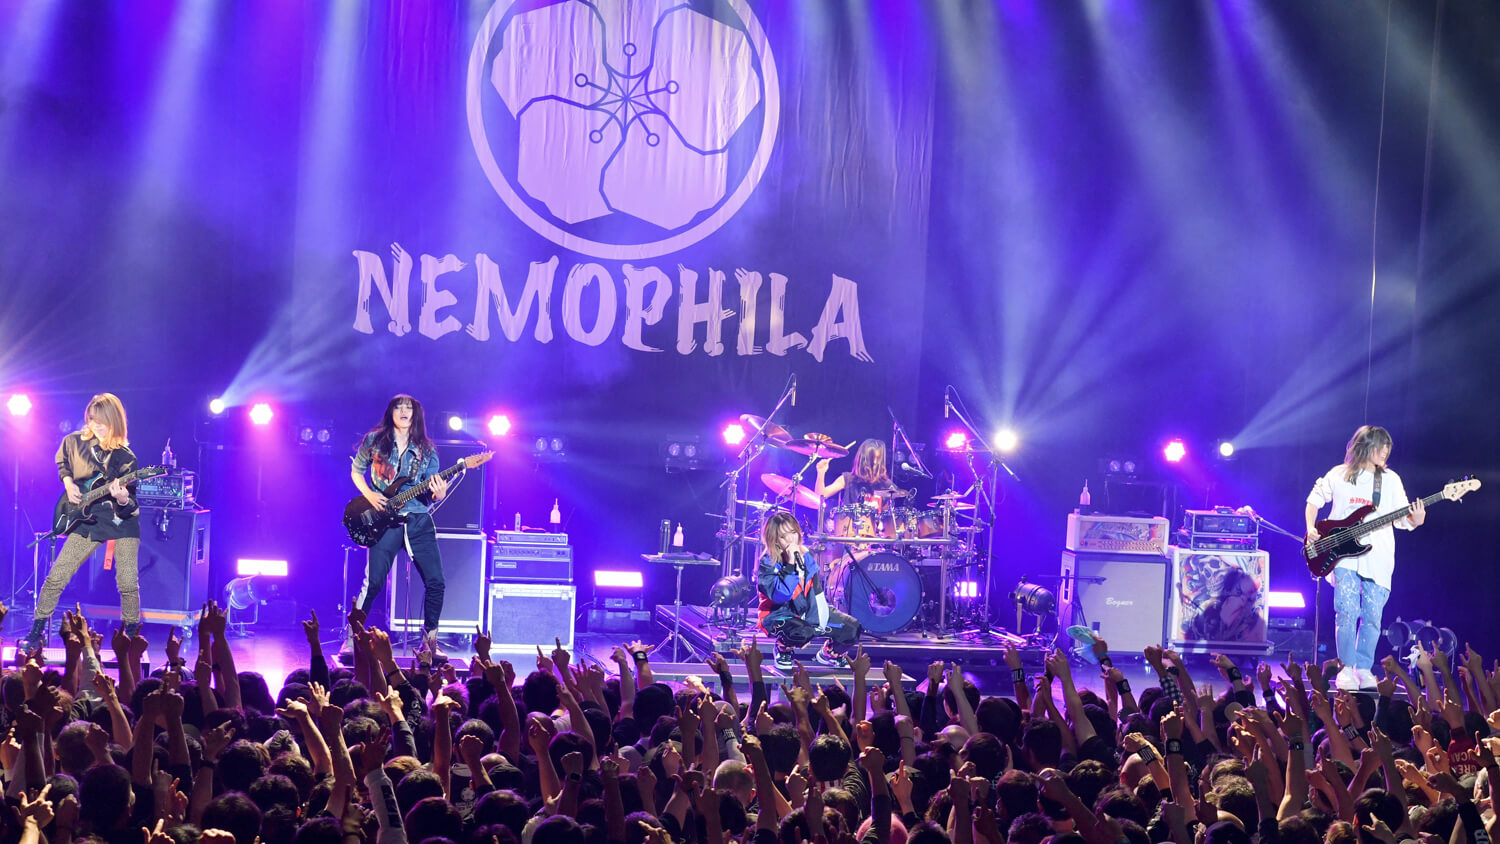 NEMOPHILAが新たなツアーをスタート、3rdアルバム情報も発表 – YOUNG GUITAR